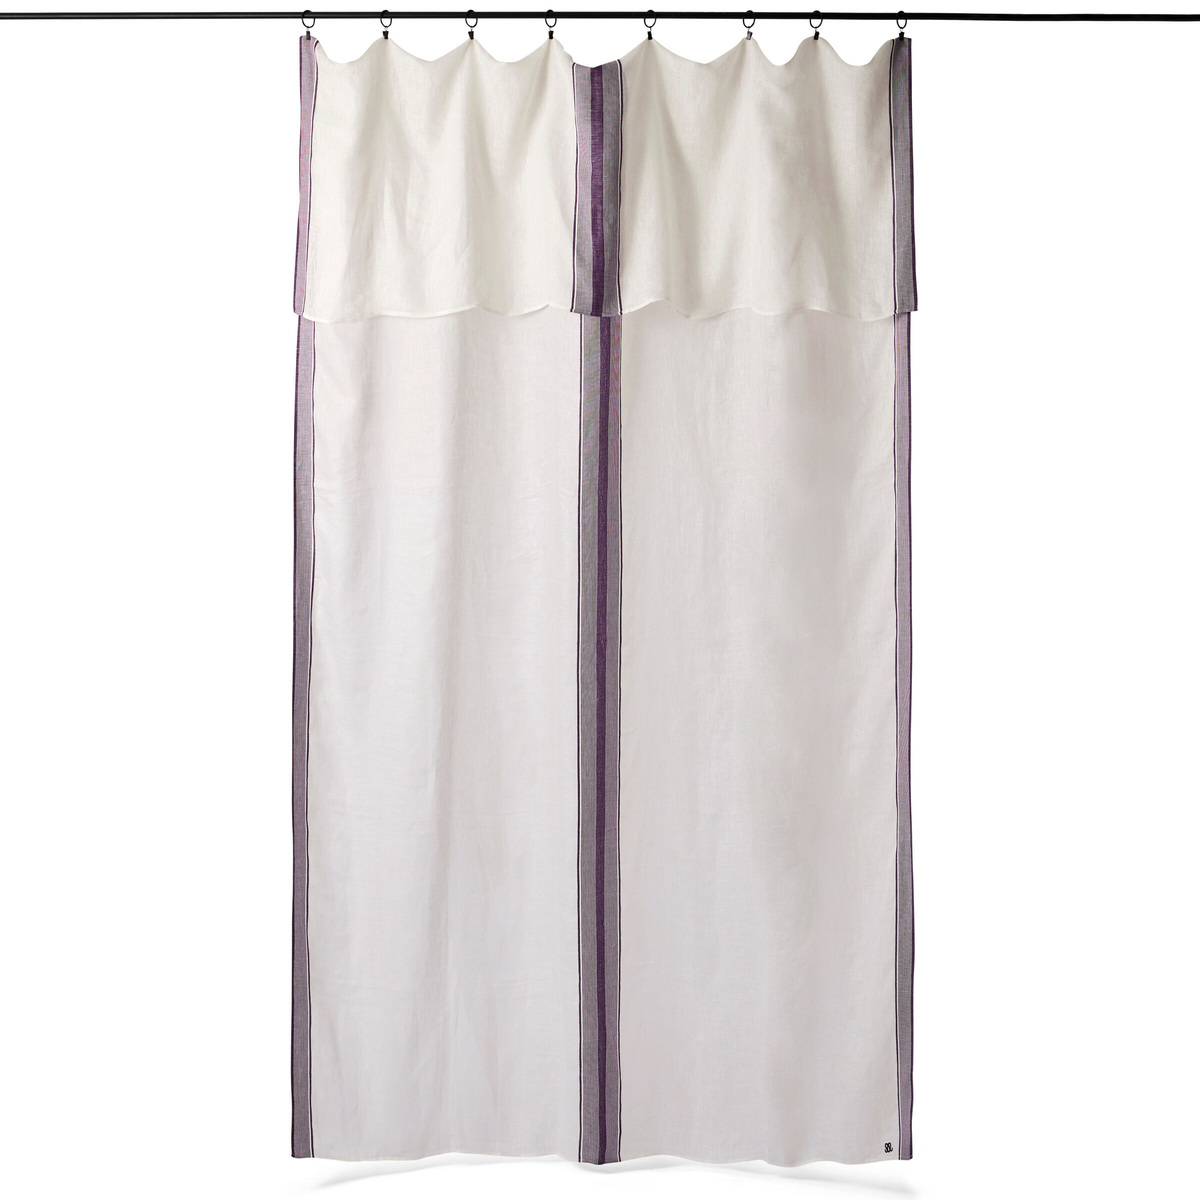 Dita curtain, White / Aubergine - 170 x 300 cm - image 1